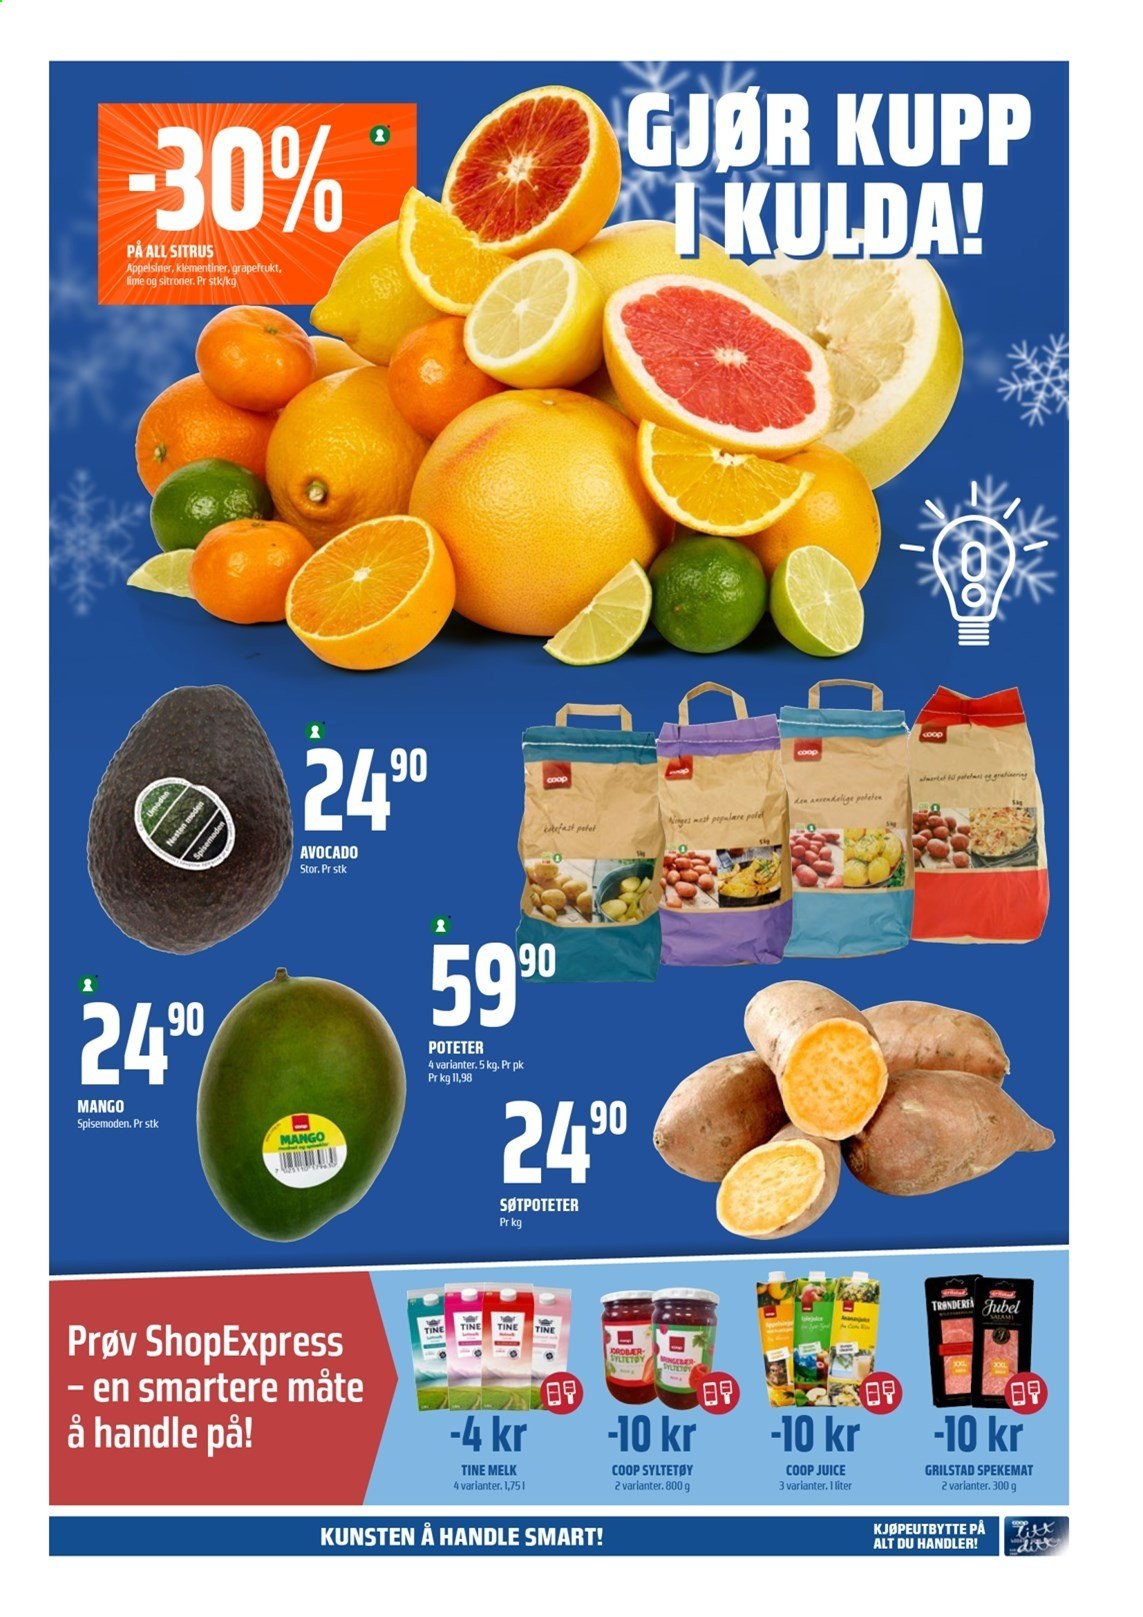 thumbnail - Kundeavis Coop Obs - 24.1.2021 - 30.1.2021 - Produkter fra tilbudsaviser - mango, sitroner, spekemat, melk, syltetøy. Side 3.